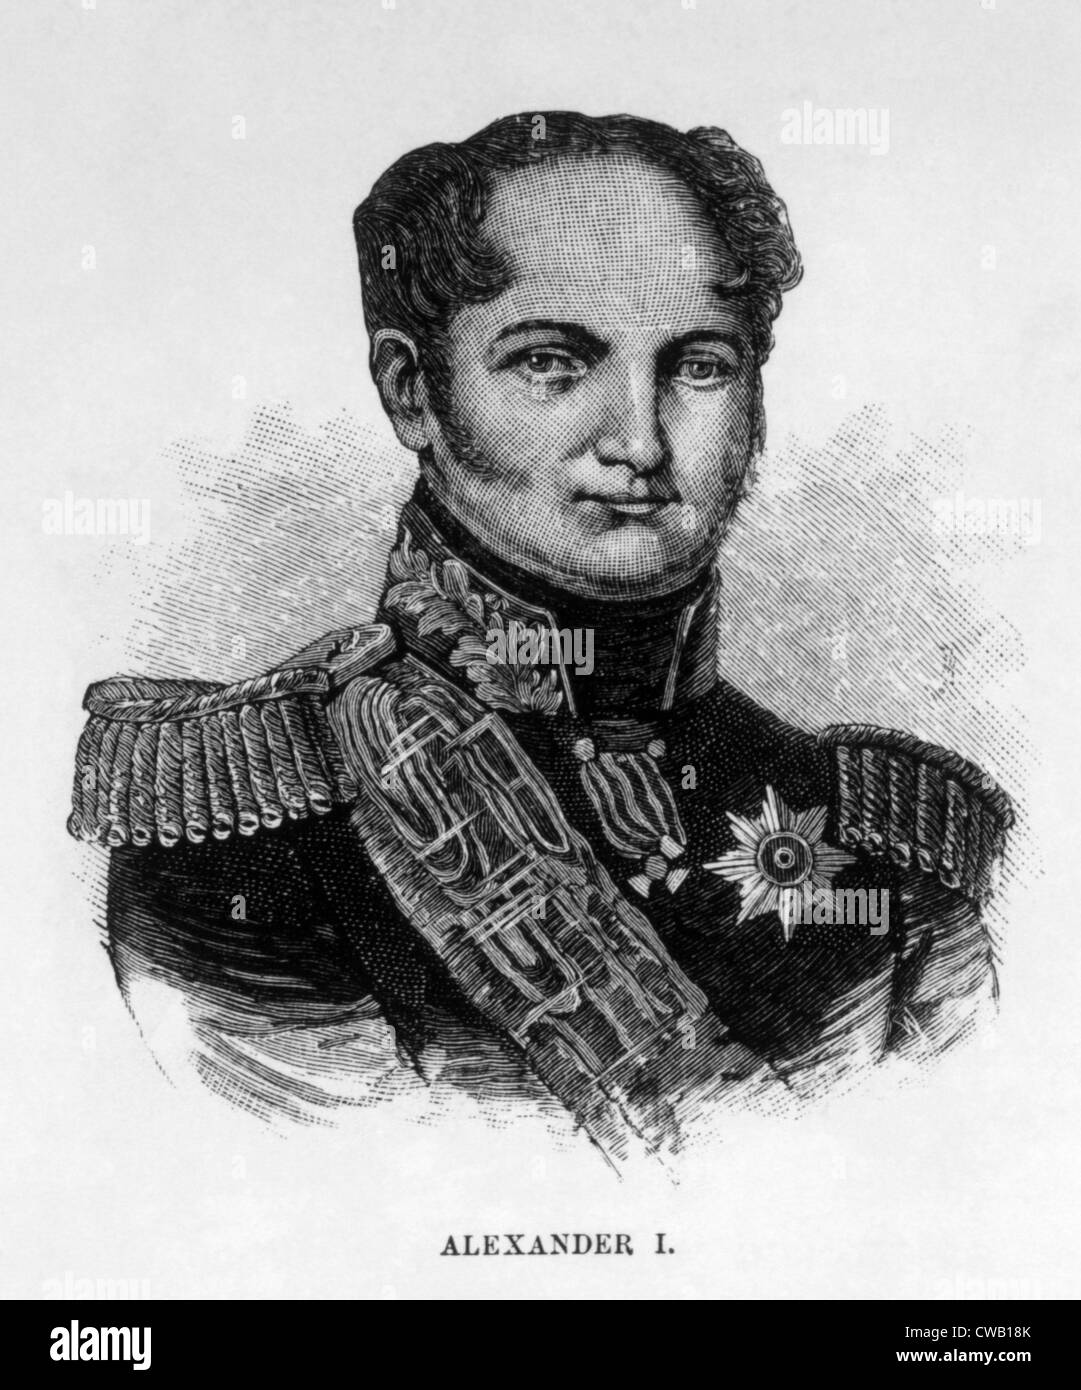 Czar Alexander I (1777-1825), Czar of Russia (1801-1825), engraving: 1886 Stock Photo